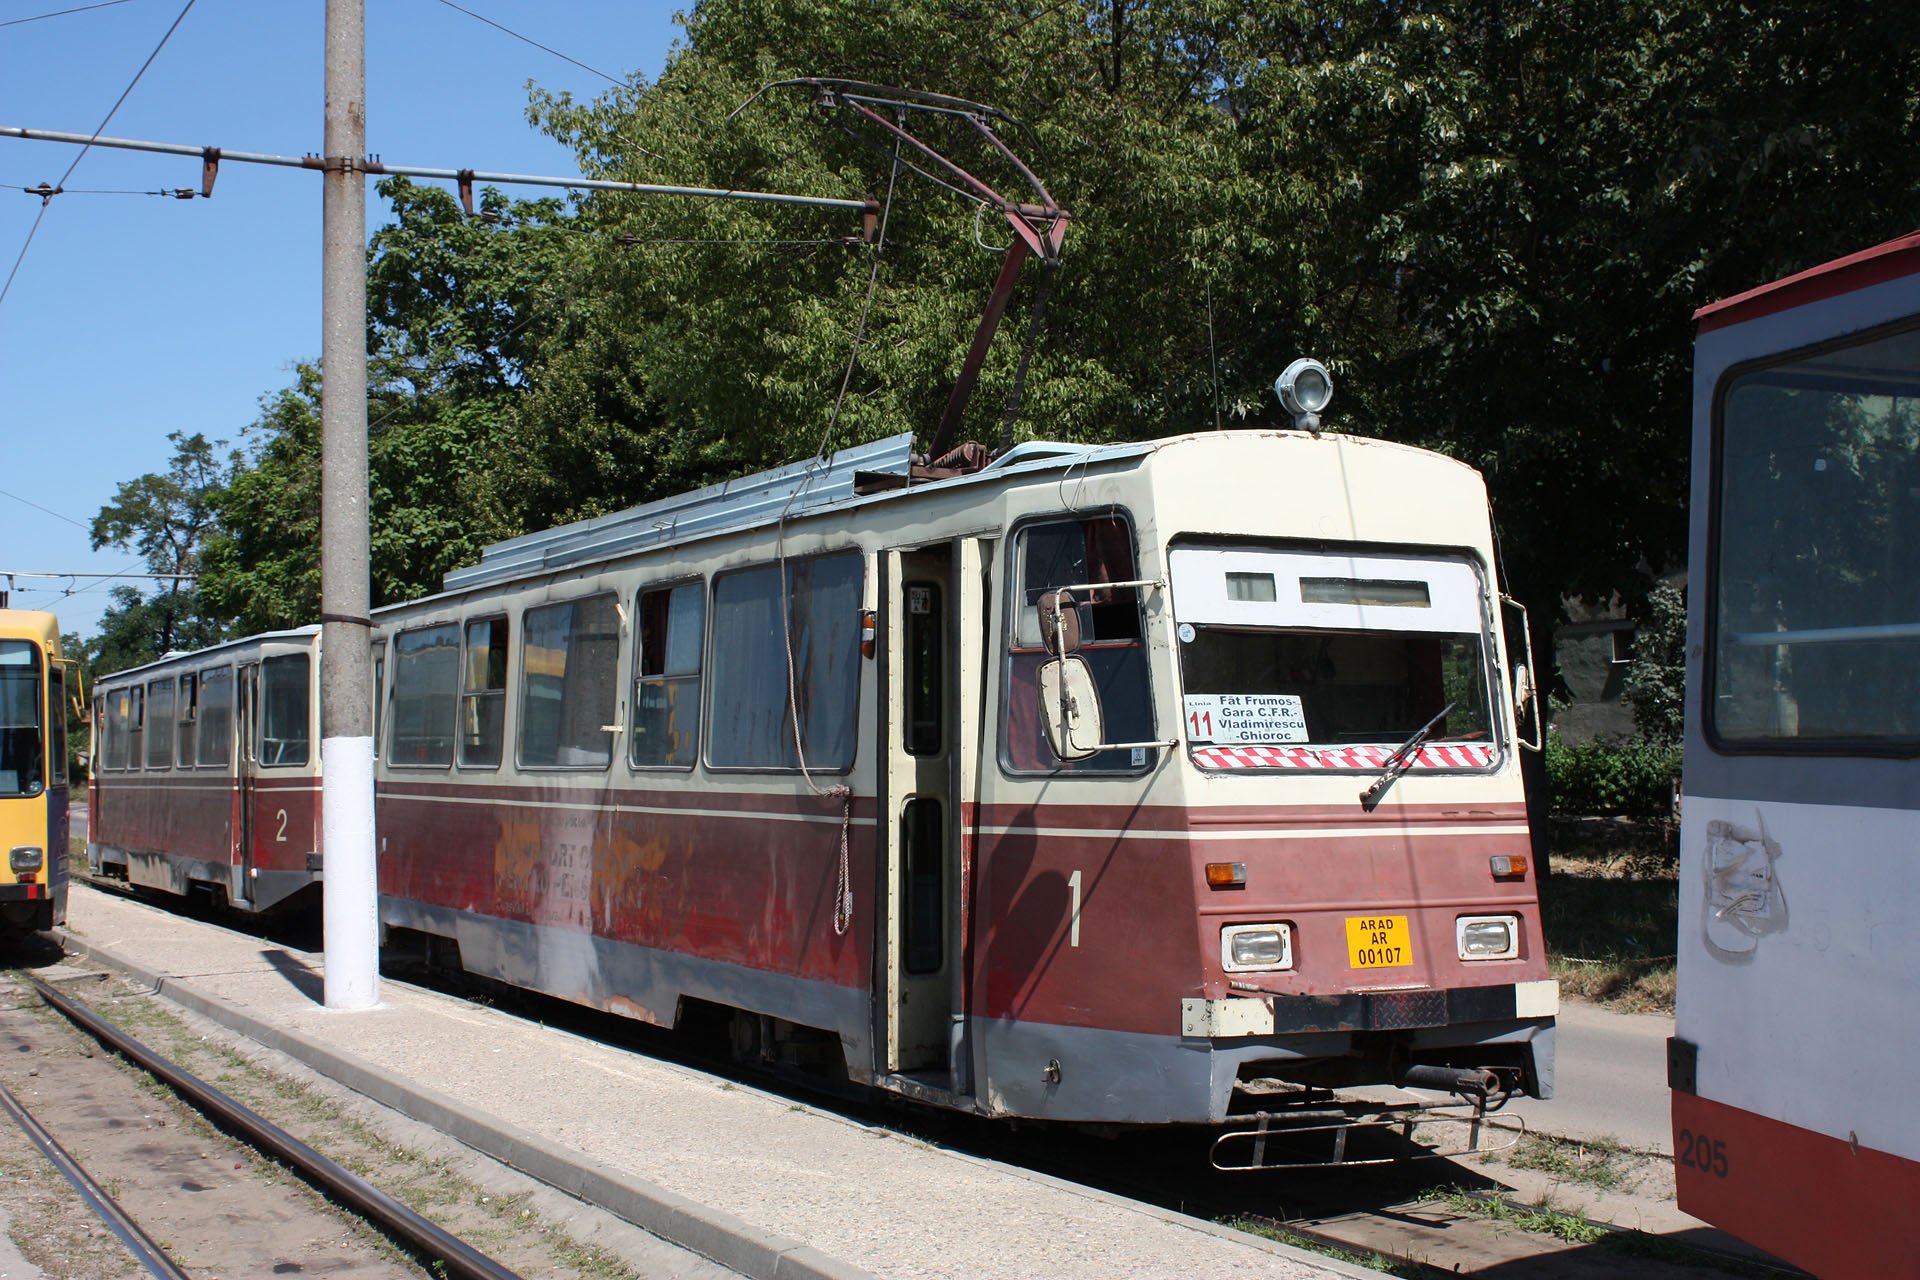 8373_01 Zwei Garnituren wurden 1996 zu einer Überlandstraßenbahn umgebaut, so fiel z.B. die mittlere Türe weg. Two trainsets were modified in 1996 to a suburban tramway, e.g. the middledoor fell away.